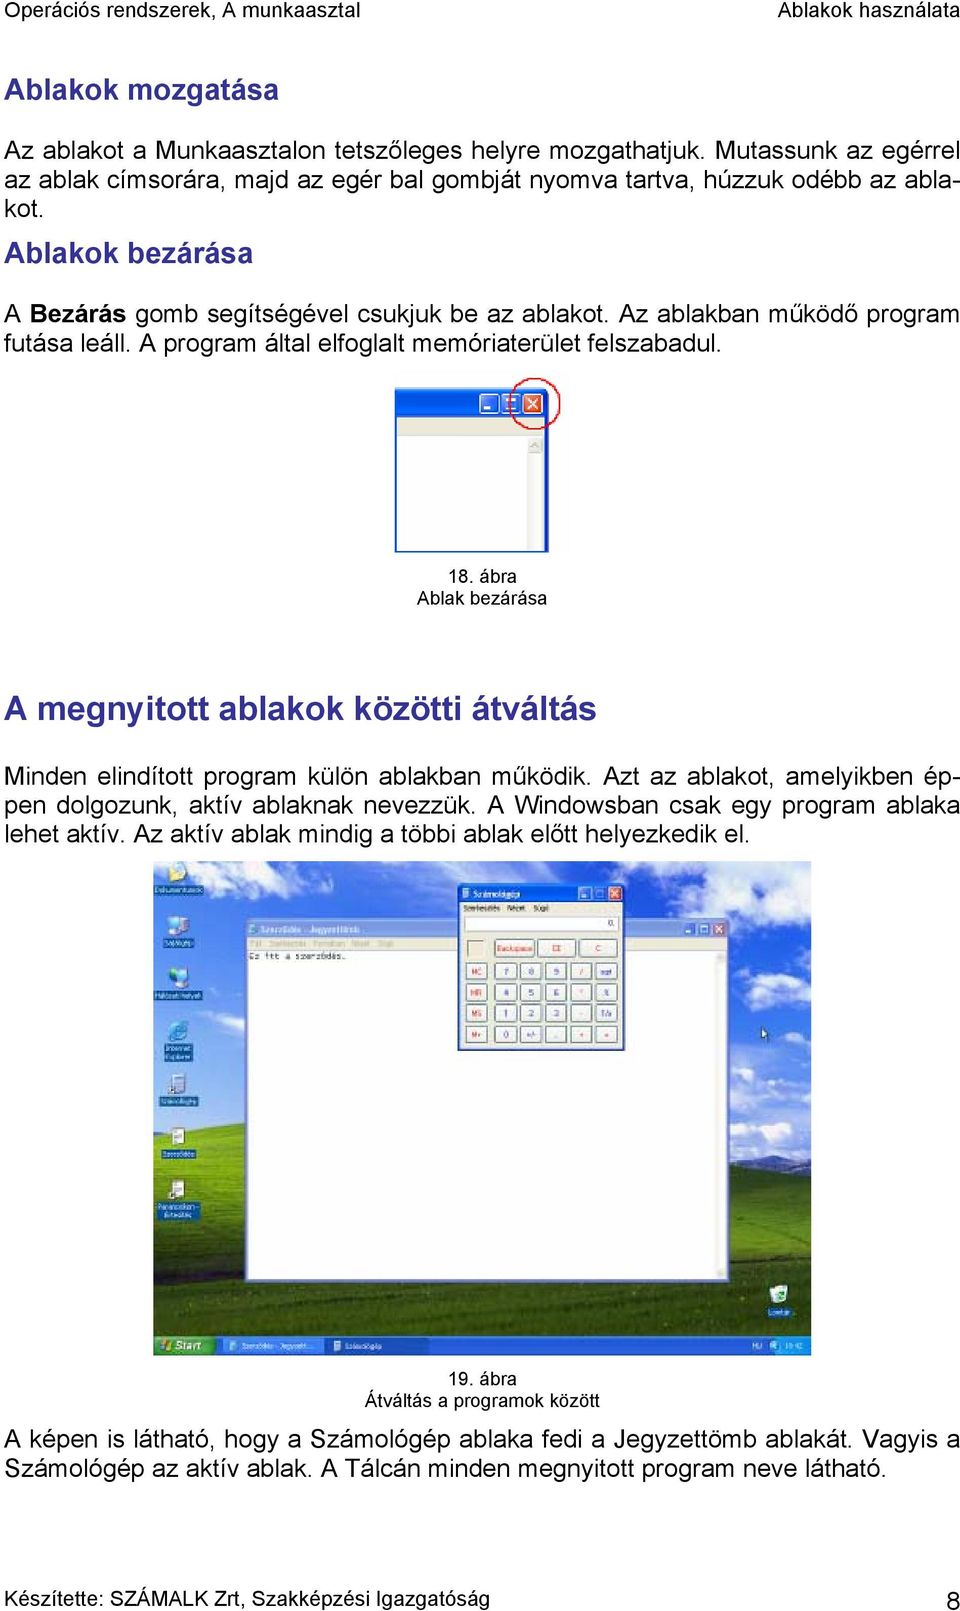 Ablakok használata. 1. ábra Programablak - PDF Ingyenes letöltés